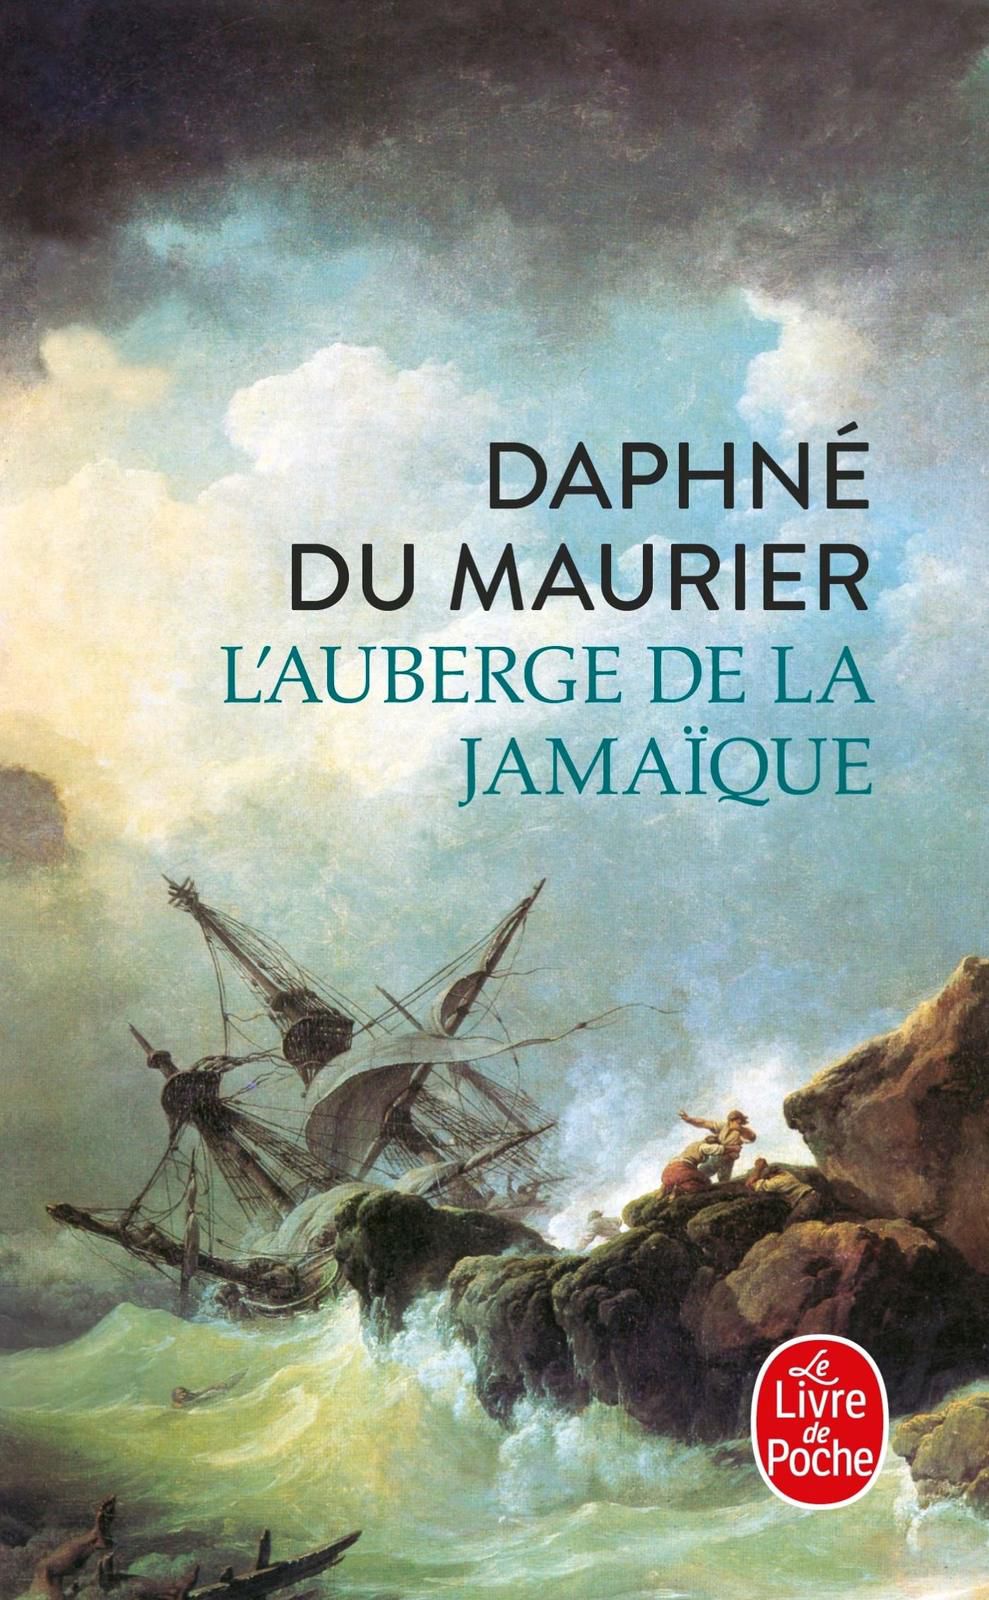 "L'auberge de la jamaique" "daphne du maurier" "www.audetourdunlivre.com"